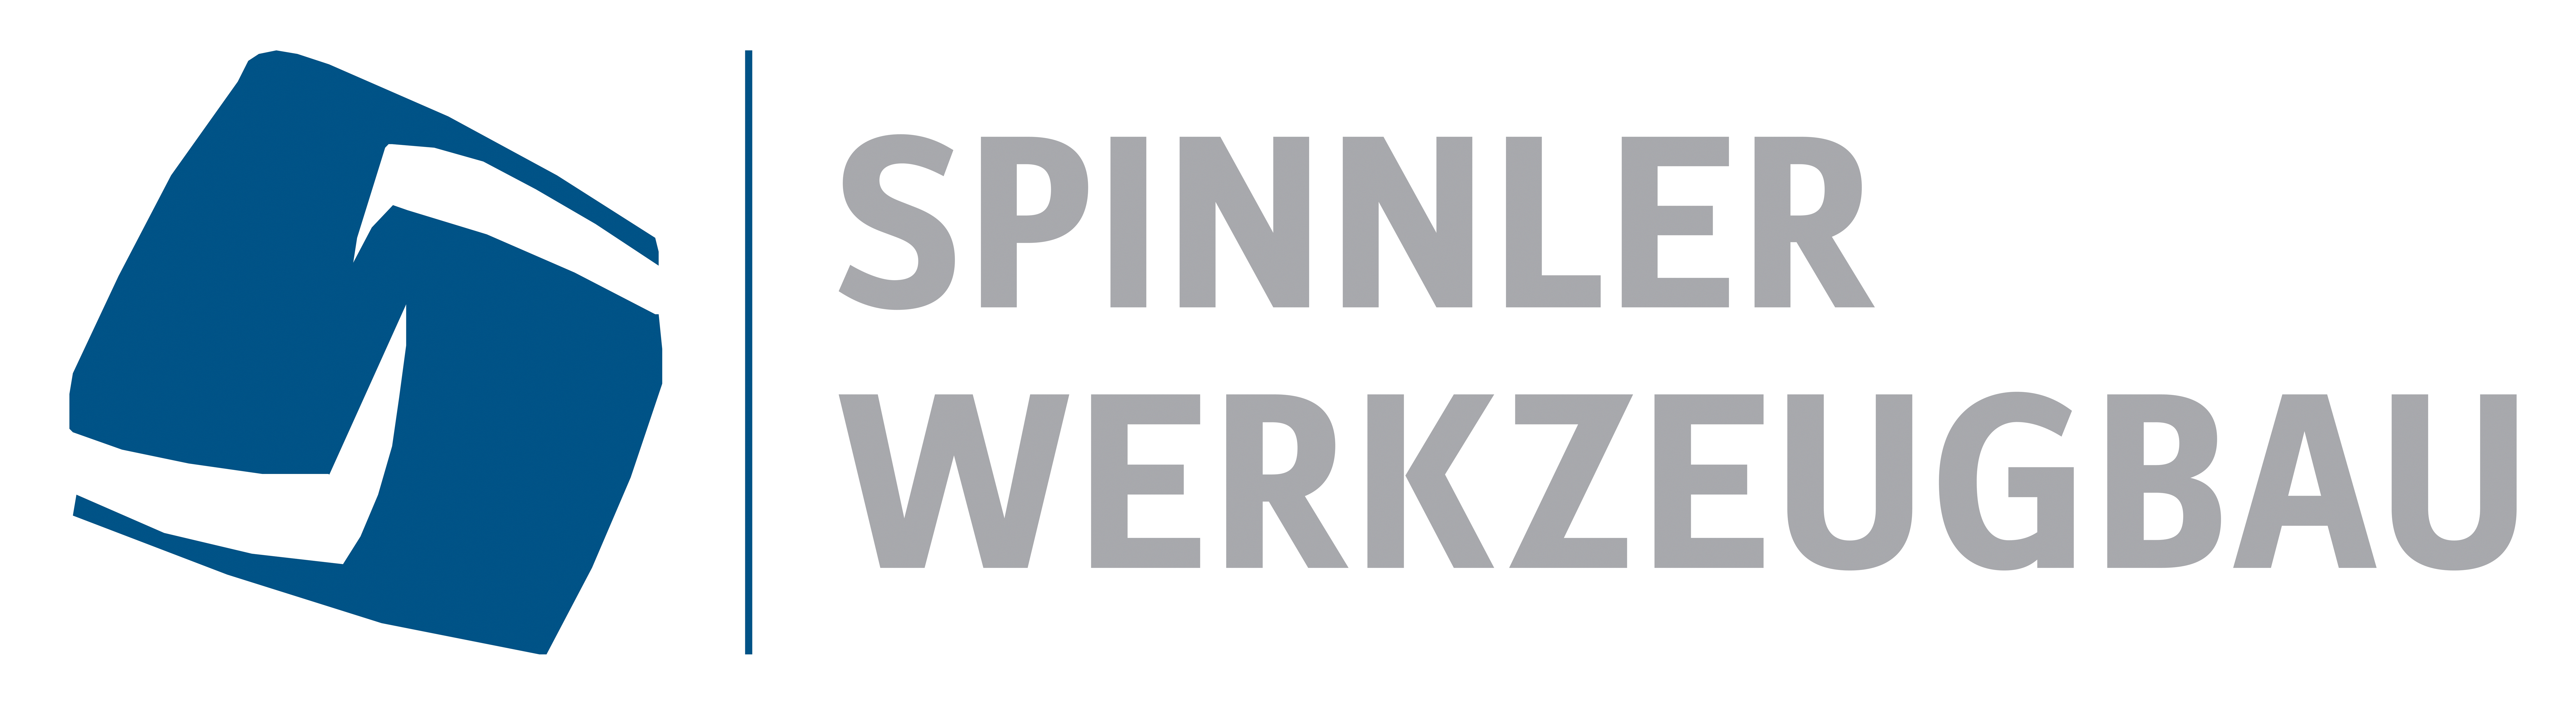 SPINNLER WERKZEUGBAU GmbH Logo